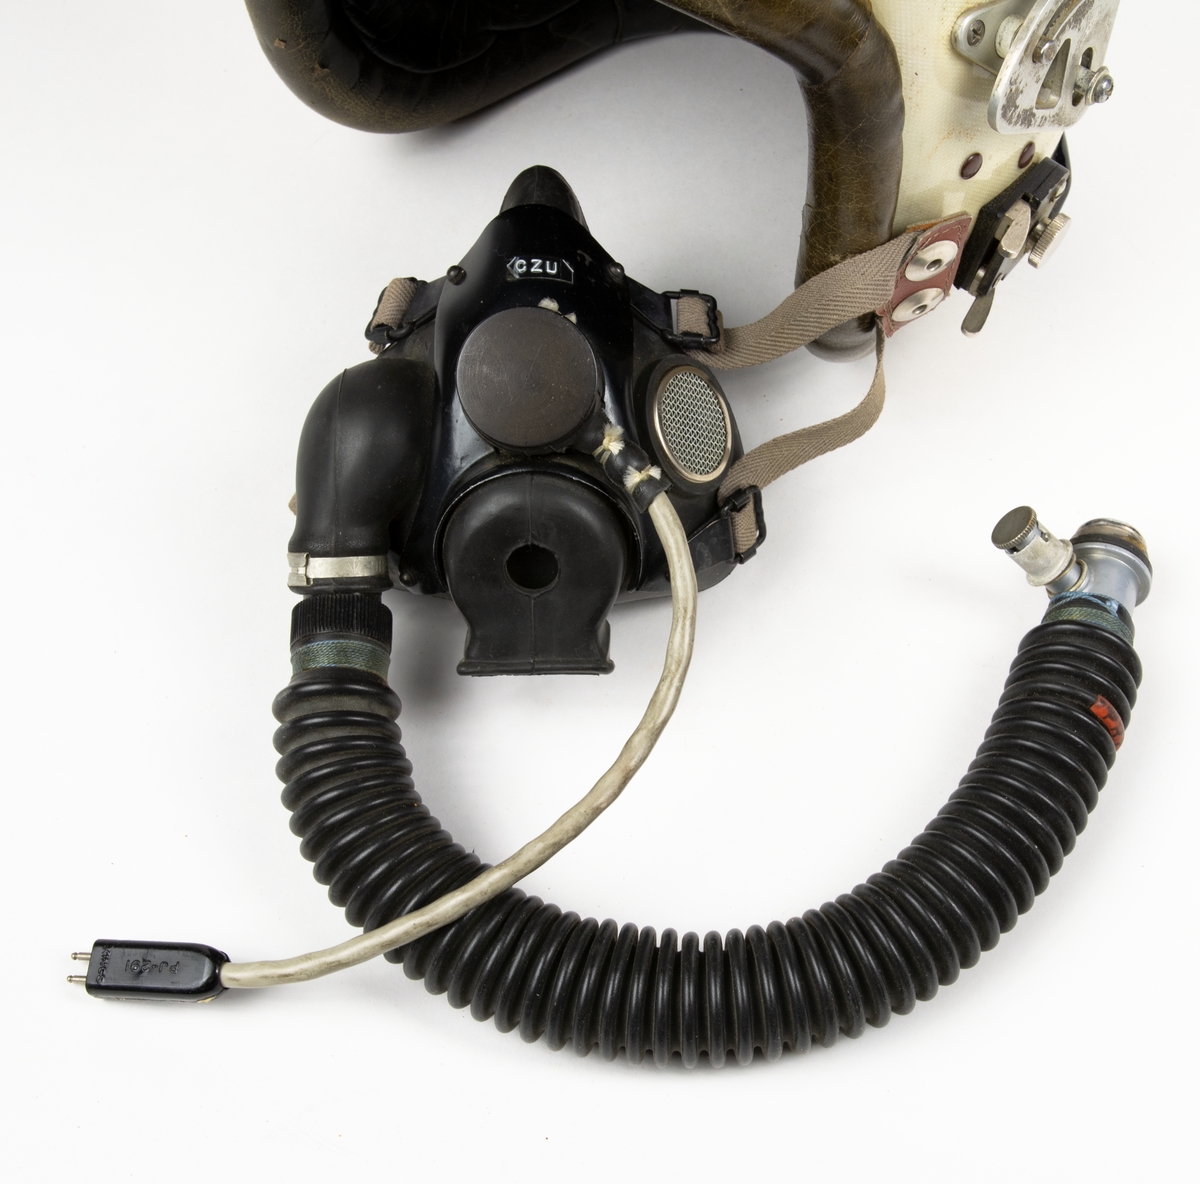 Flyghjälm av fransk modell med gasmask och visir. Hjälmen är har inredning och kant av läder. Till hjälmen hör en förvaringspåse och ett visirskydd av tyg.